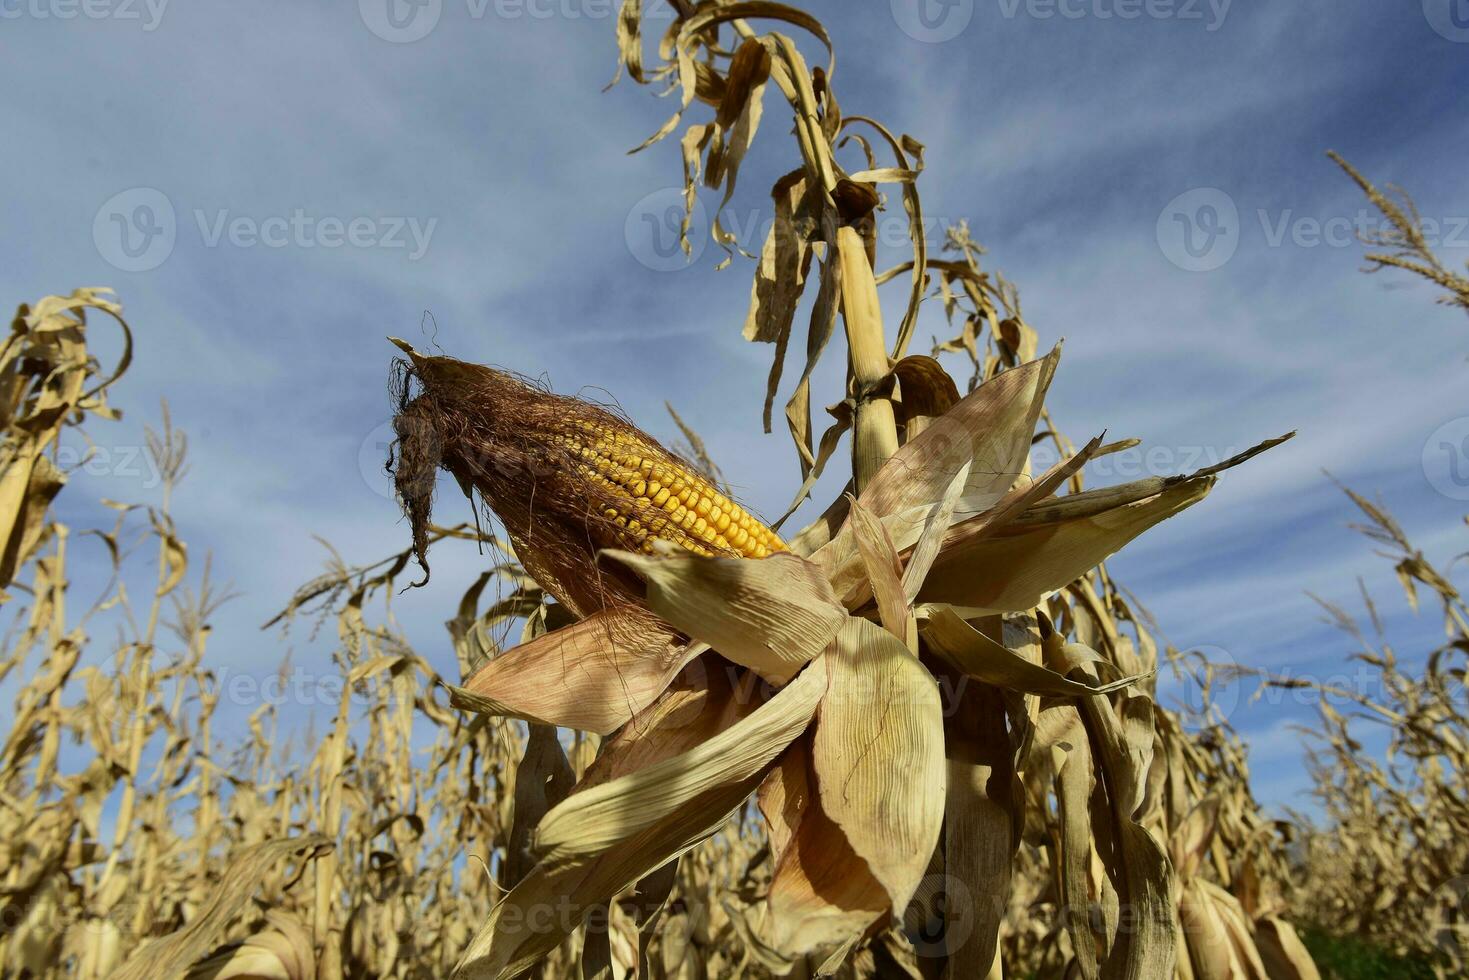 Mais Cob wachsend auf Pflanze bereit zu Ernte, Argentinien Landschaft, Buenos Aires Provinz, Argentinien foto